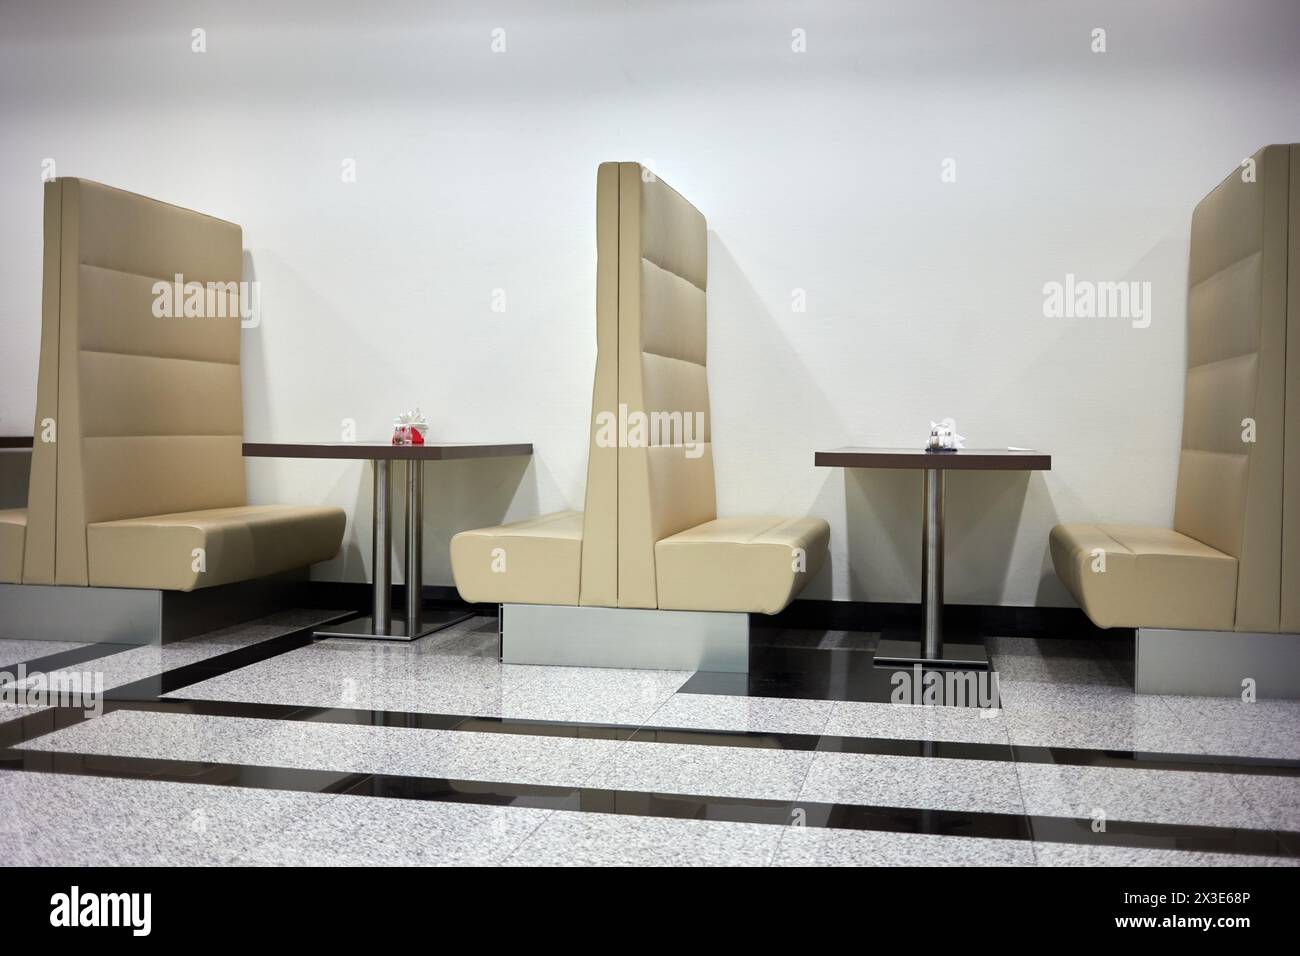 KAZAN, RUSSIE - 10 décembre 2017 : intérieur d'un café moderne avec des tables pour deux dans le salon d'affaires de l'aéroport international de Kazan. Banque D'Images